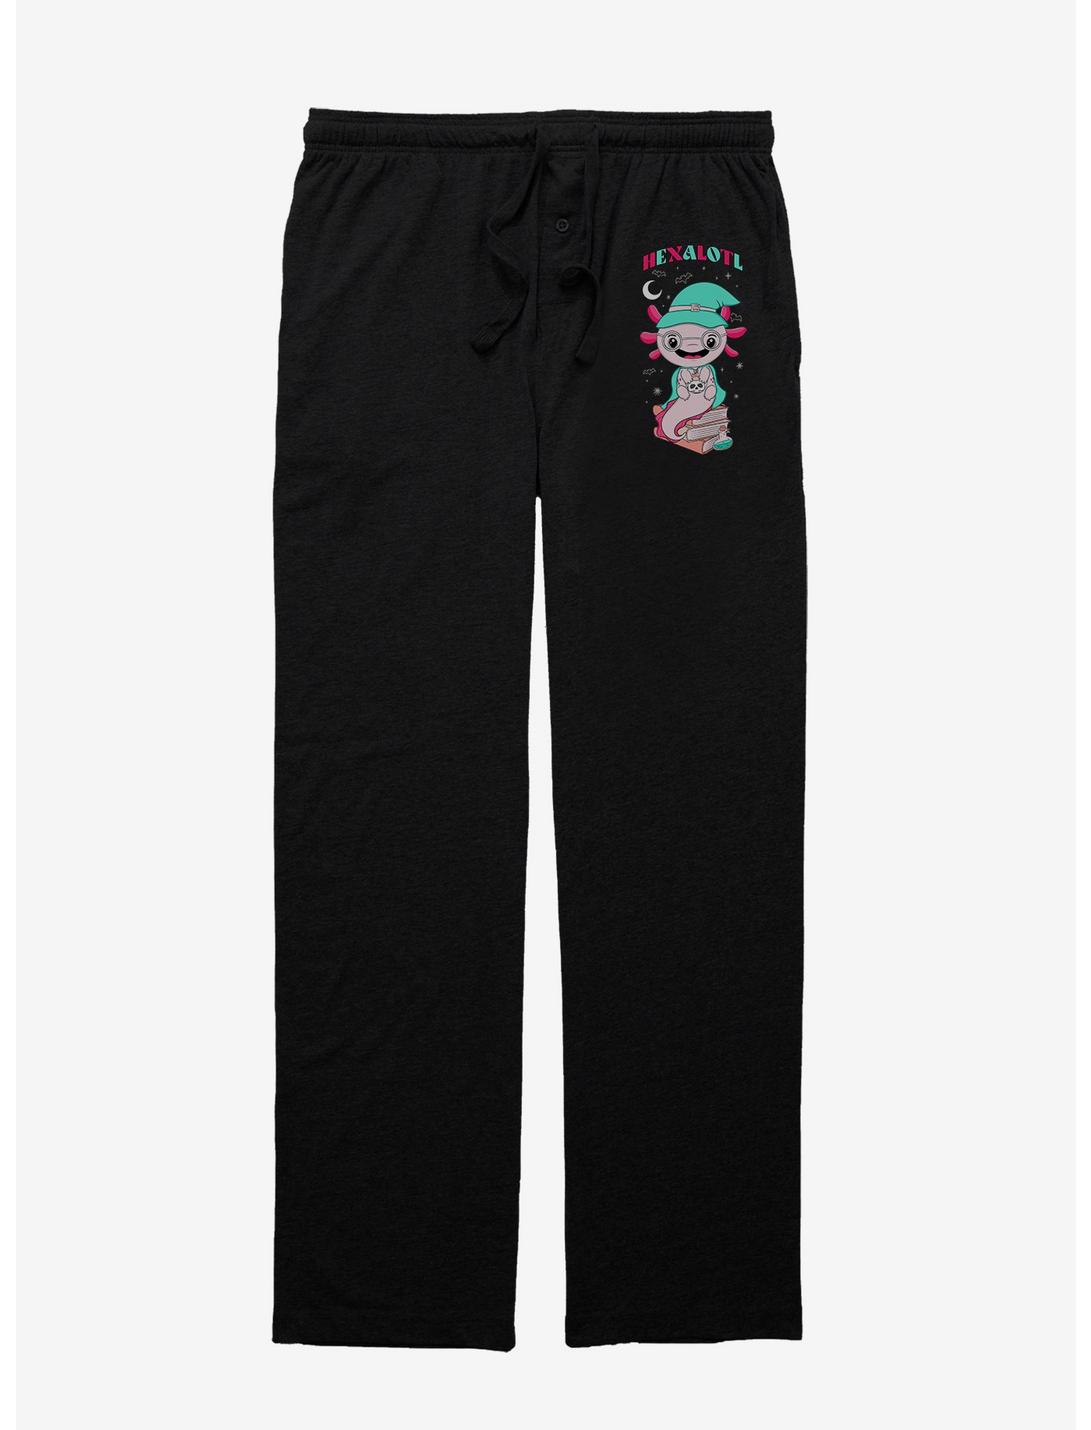 Axolotl Hexalotl Pajama Pants, BLACK, hi-res